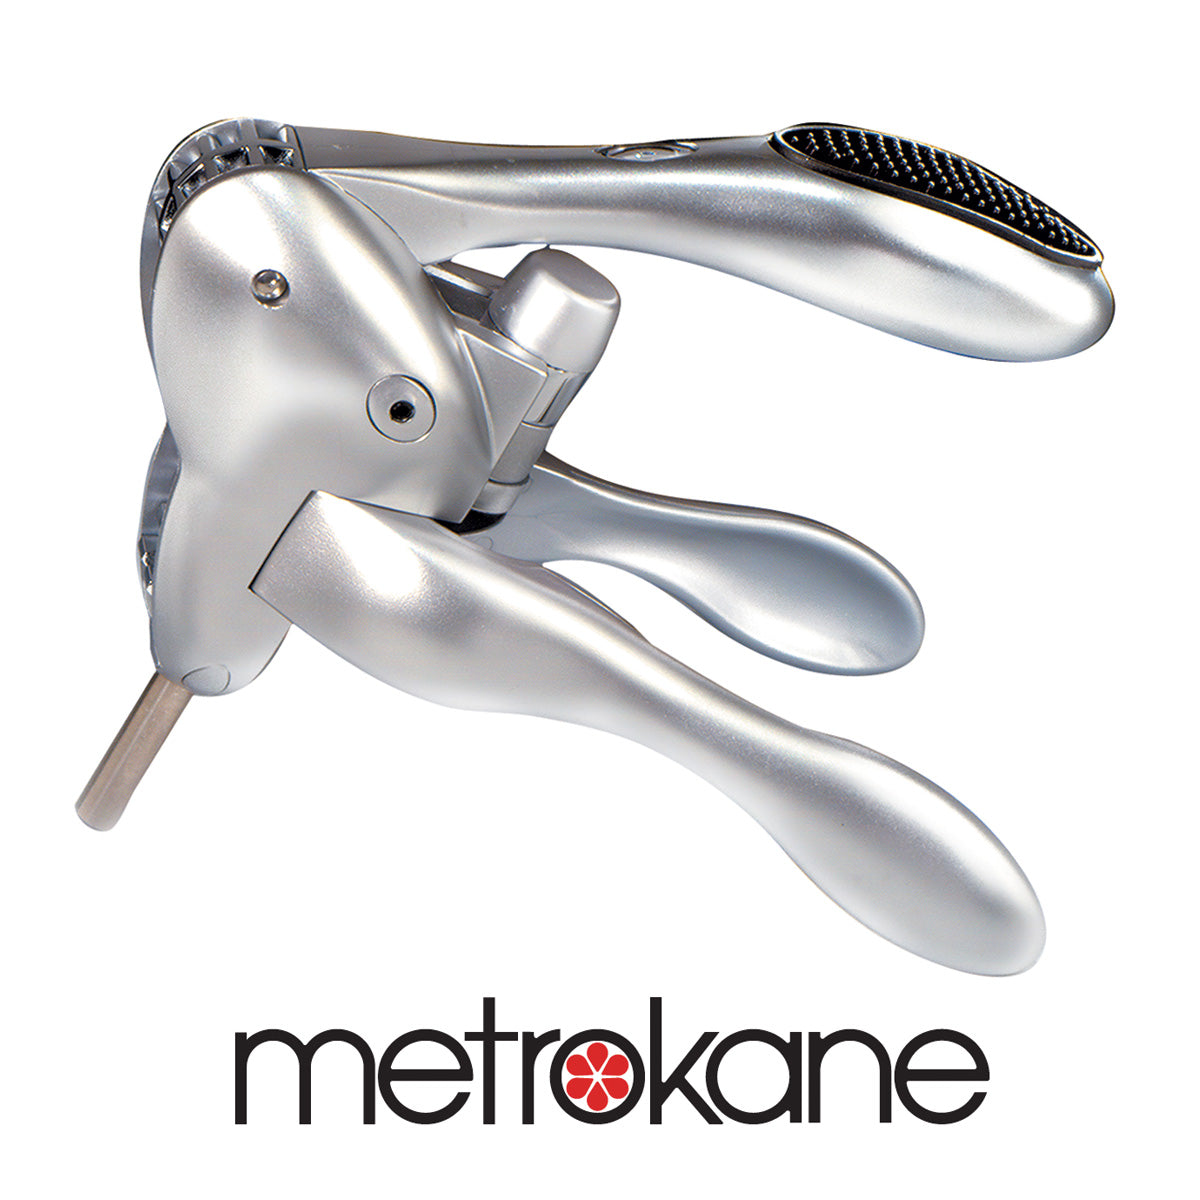 Metrokane Rabbit Corkscrew W/ Free Foil Cutter - Silver